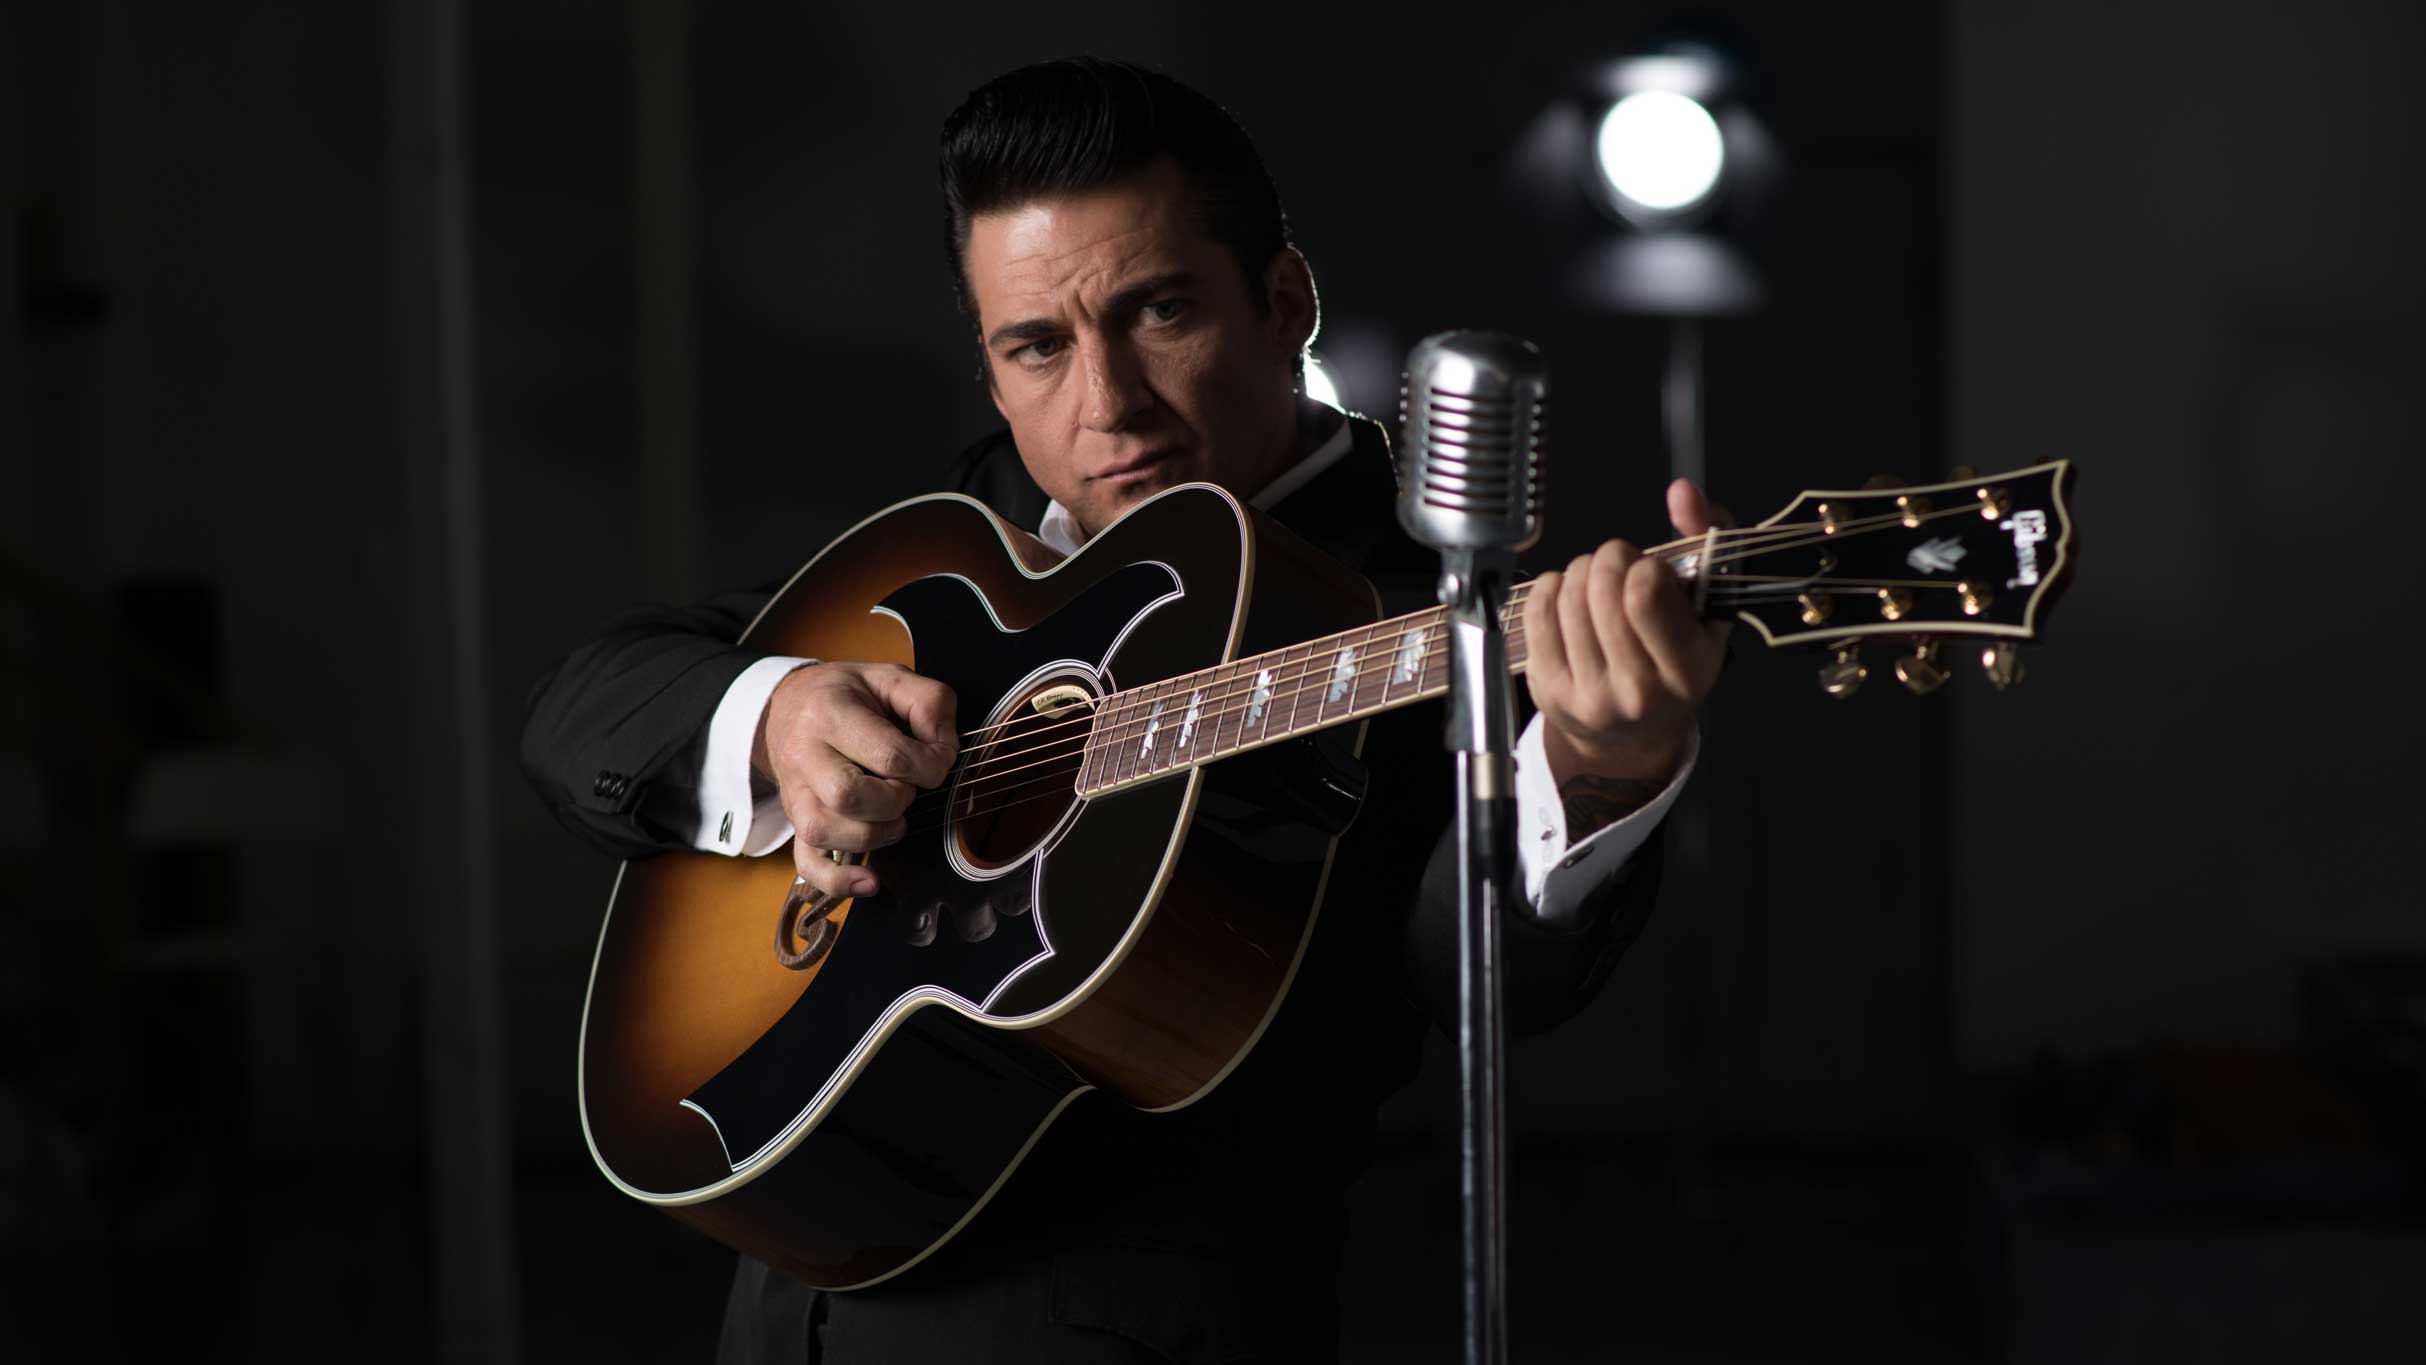 The Man In Black: Tribute To Johnny Cash presales in Brossard